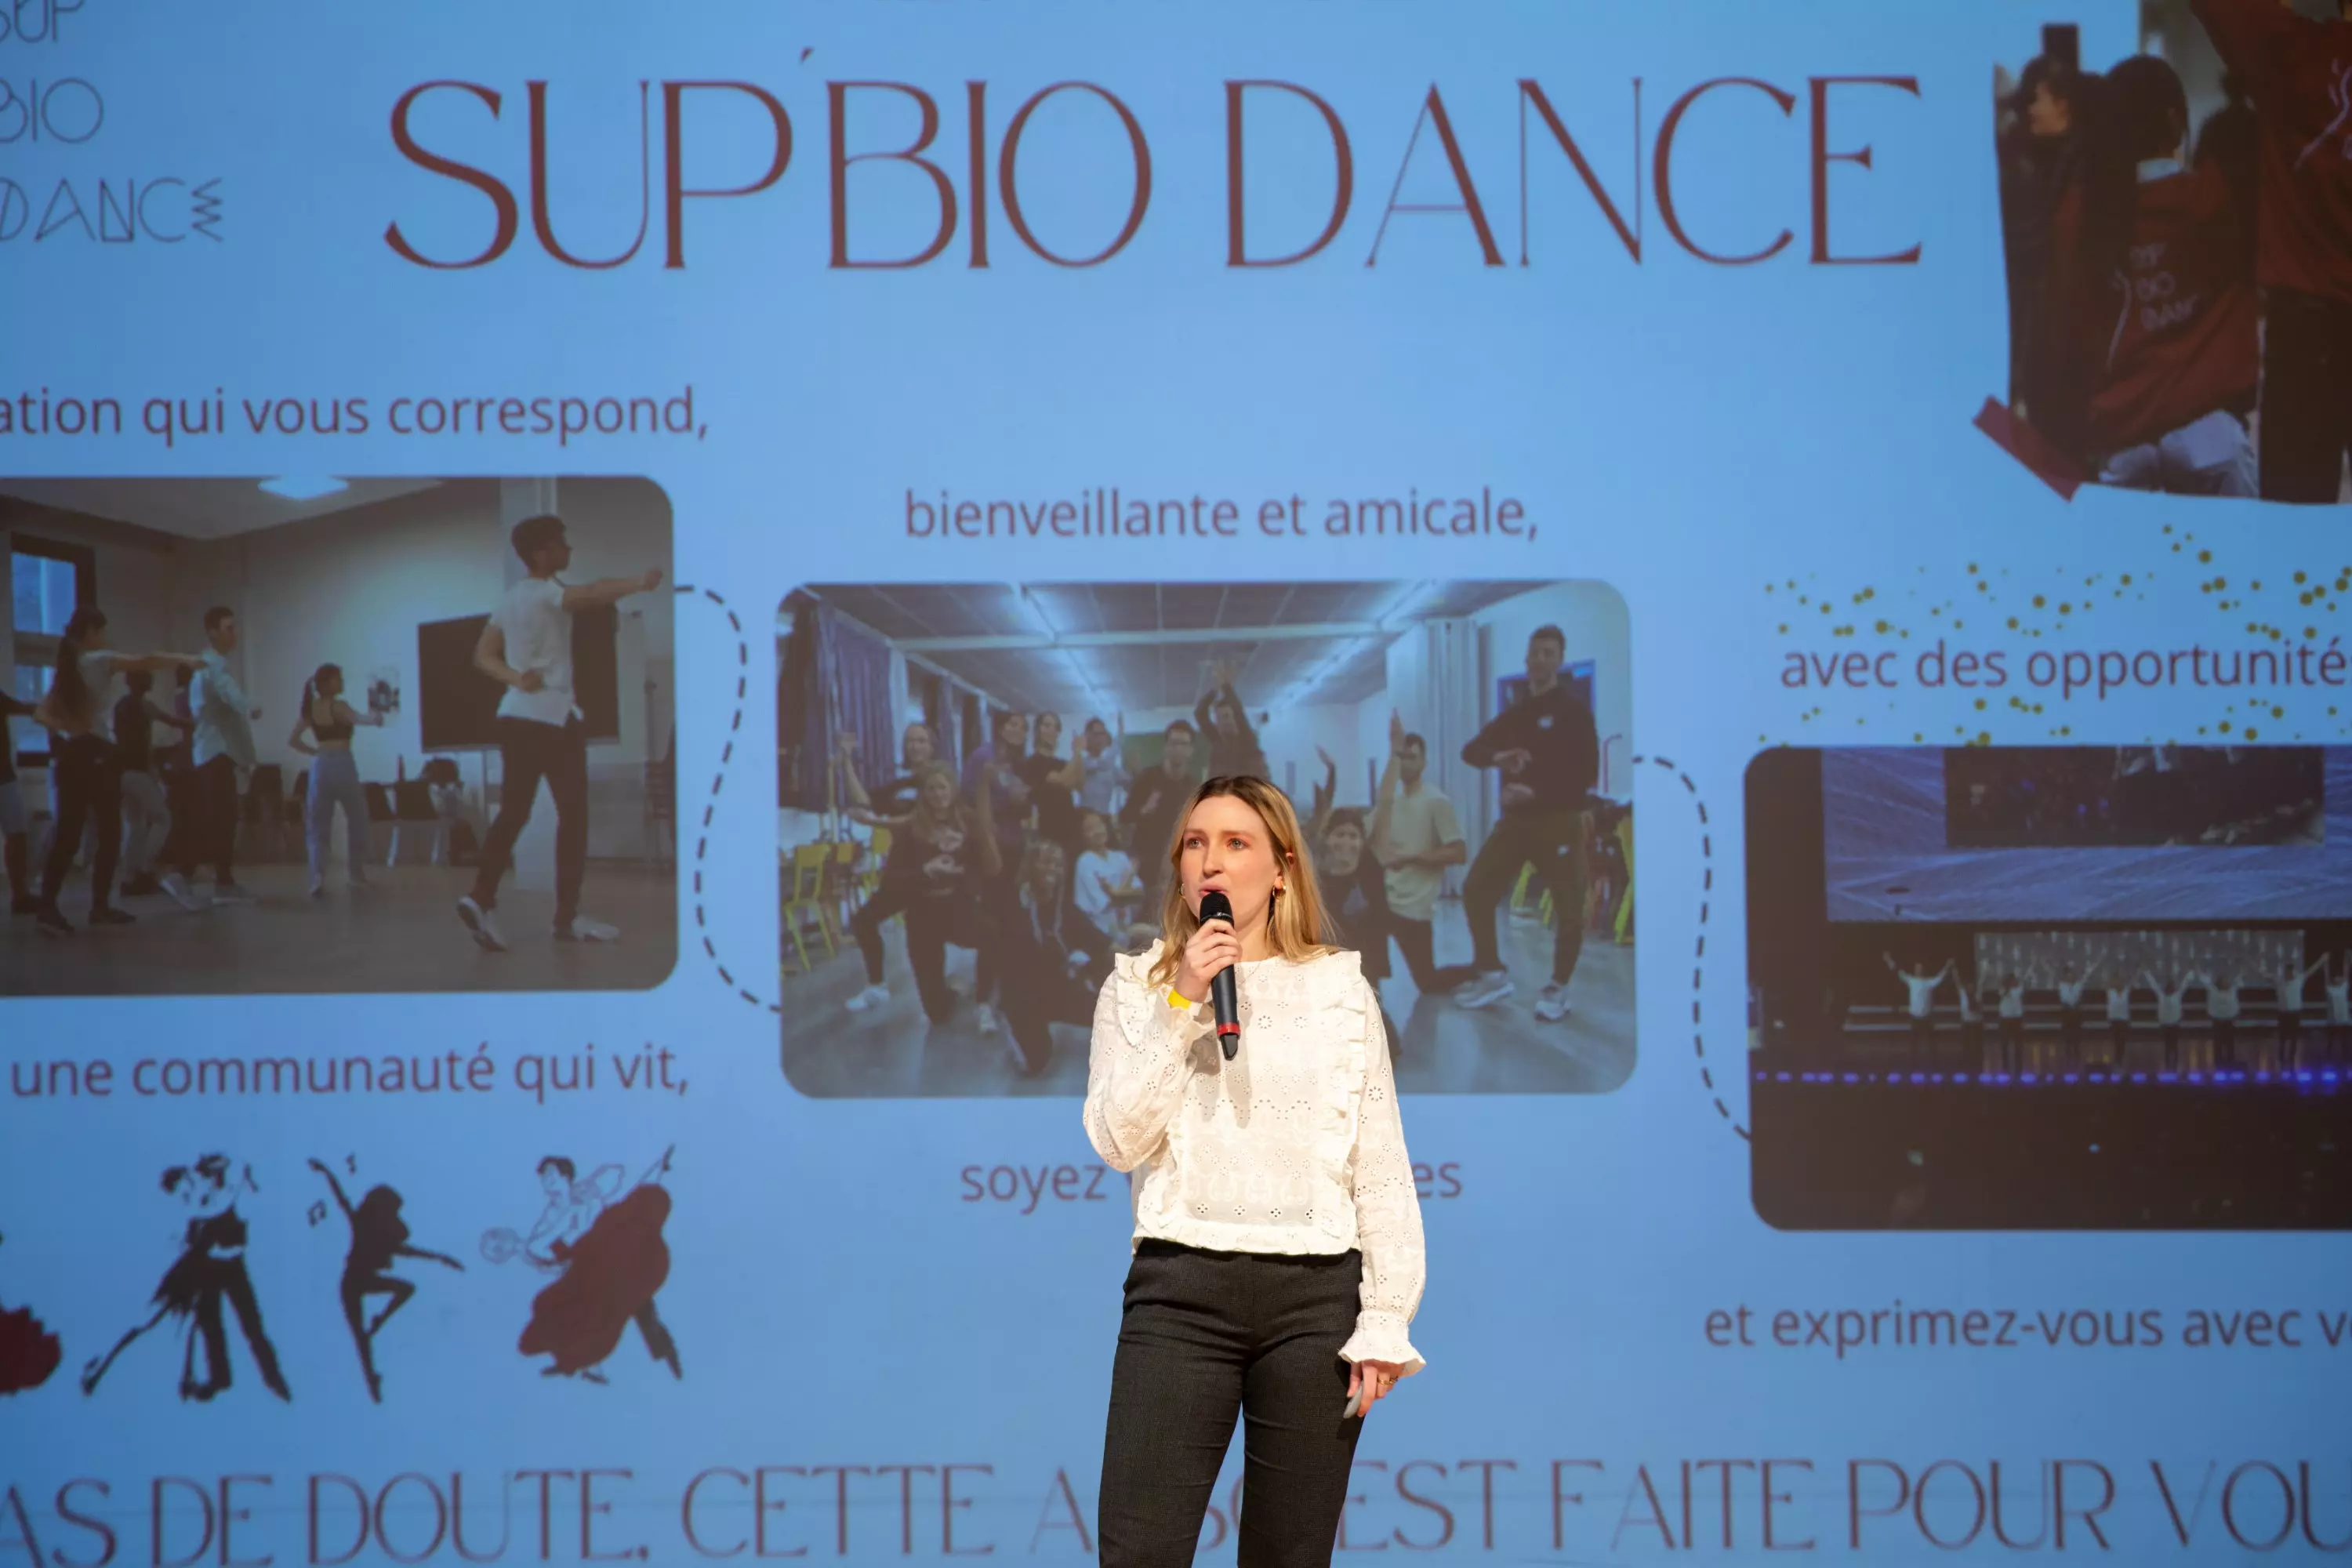 Photo du pitch de l'association Sup'Bio Dance sur scène avec sa présentation dans le fond